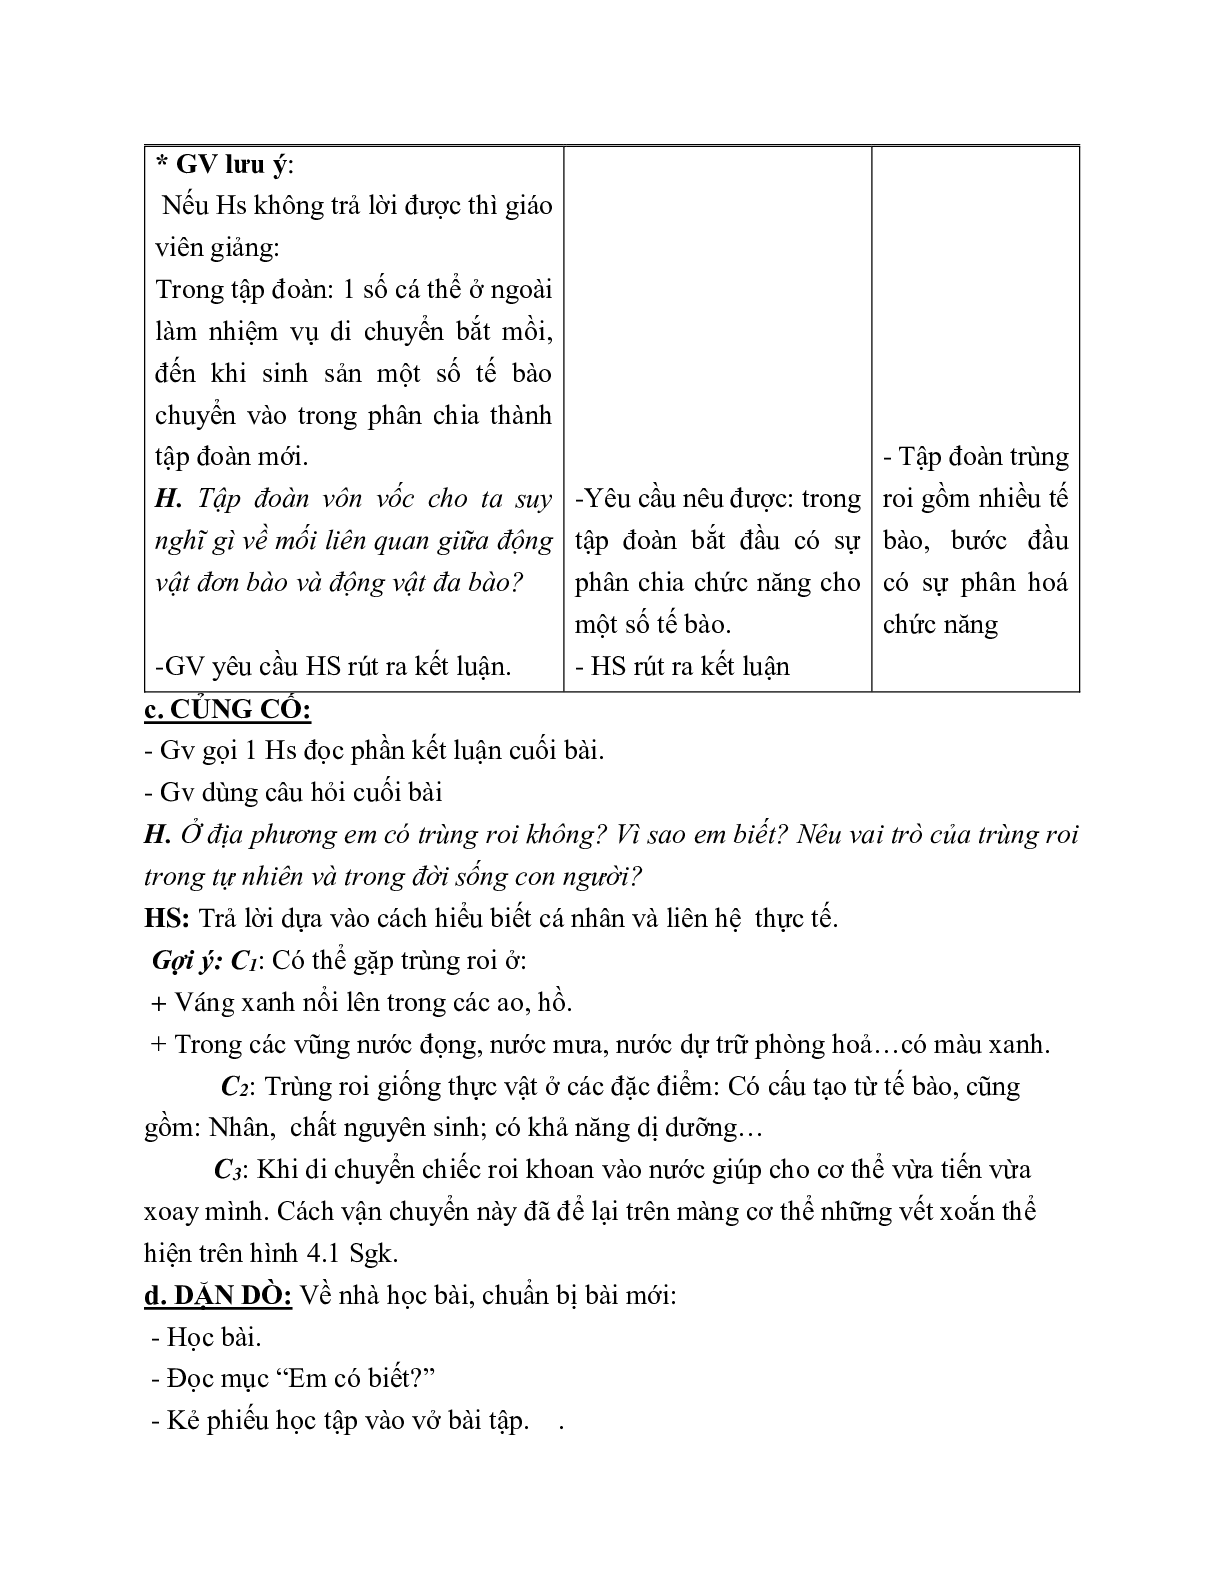 Giáo án Sinh học 7 Bài 4: Trùng roi mới nhất - CV5512 (trang 4)